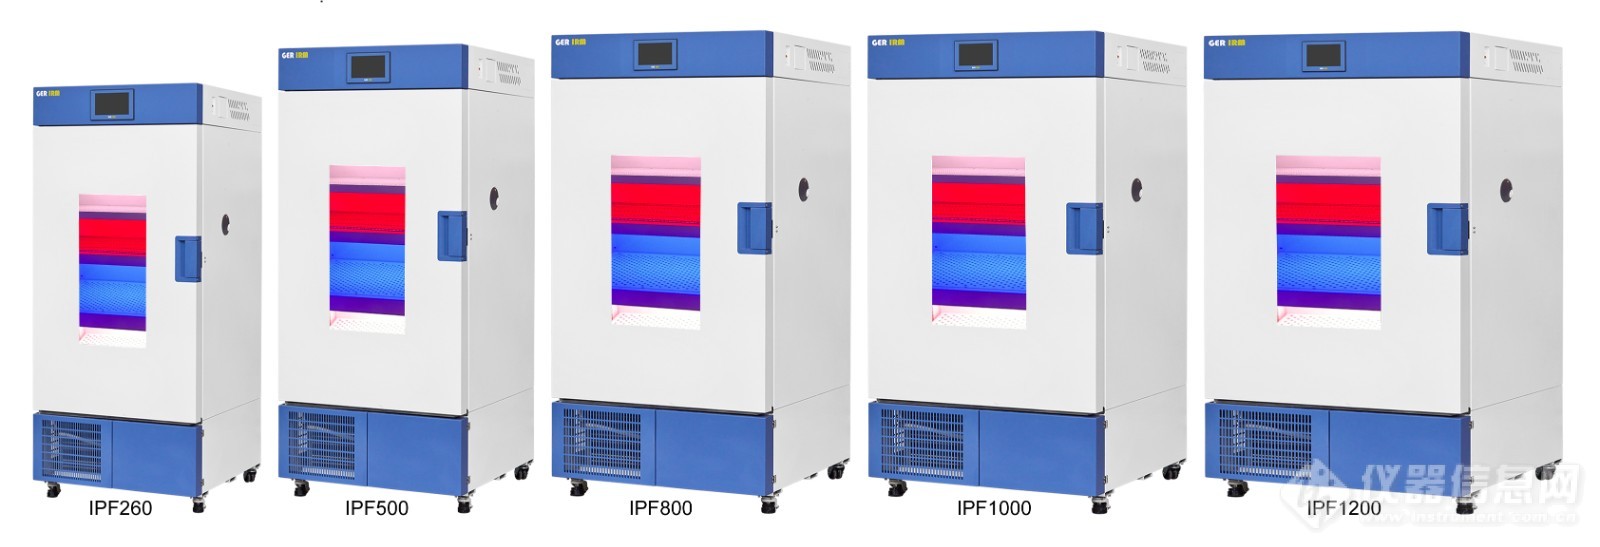 四色光植物培养箱系列-IPF.jpg